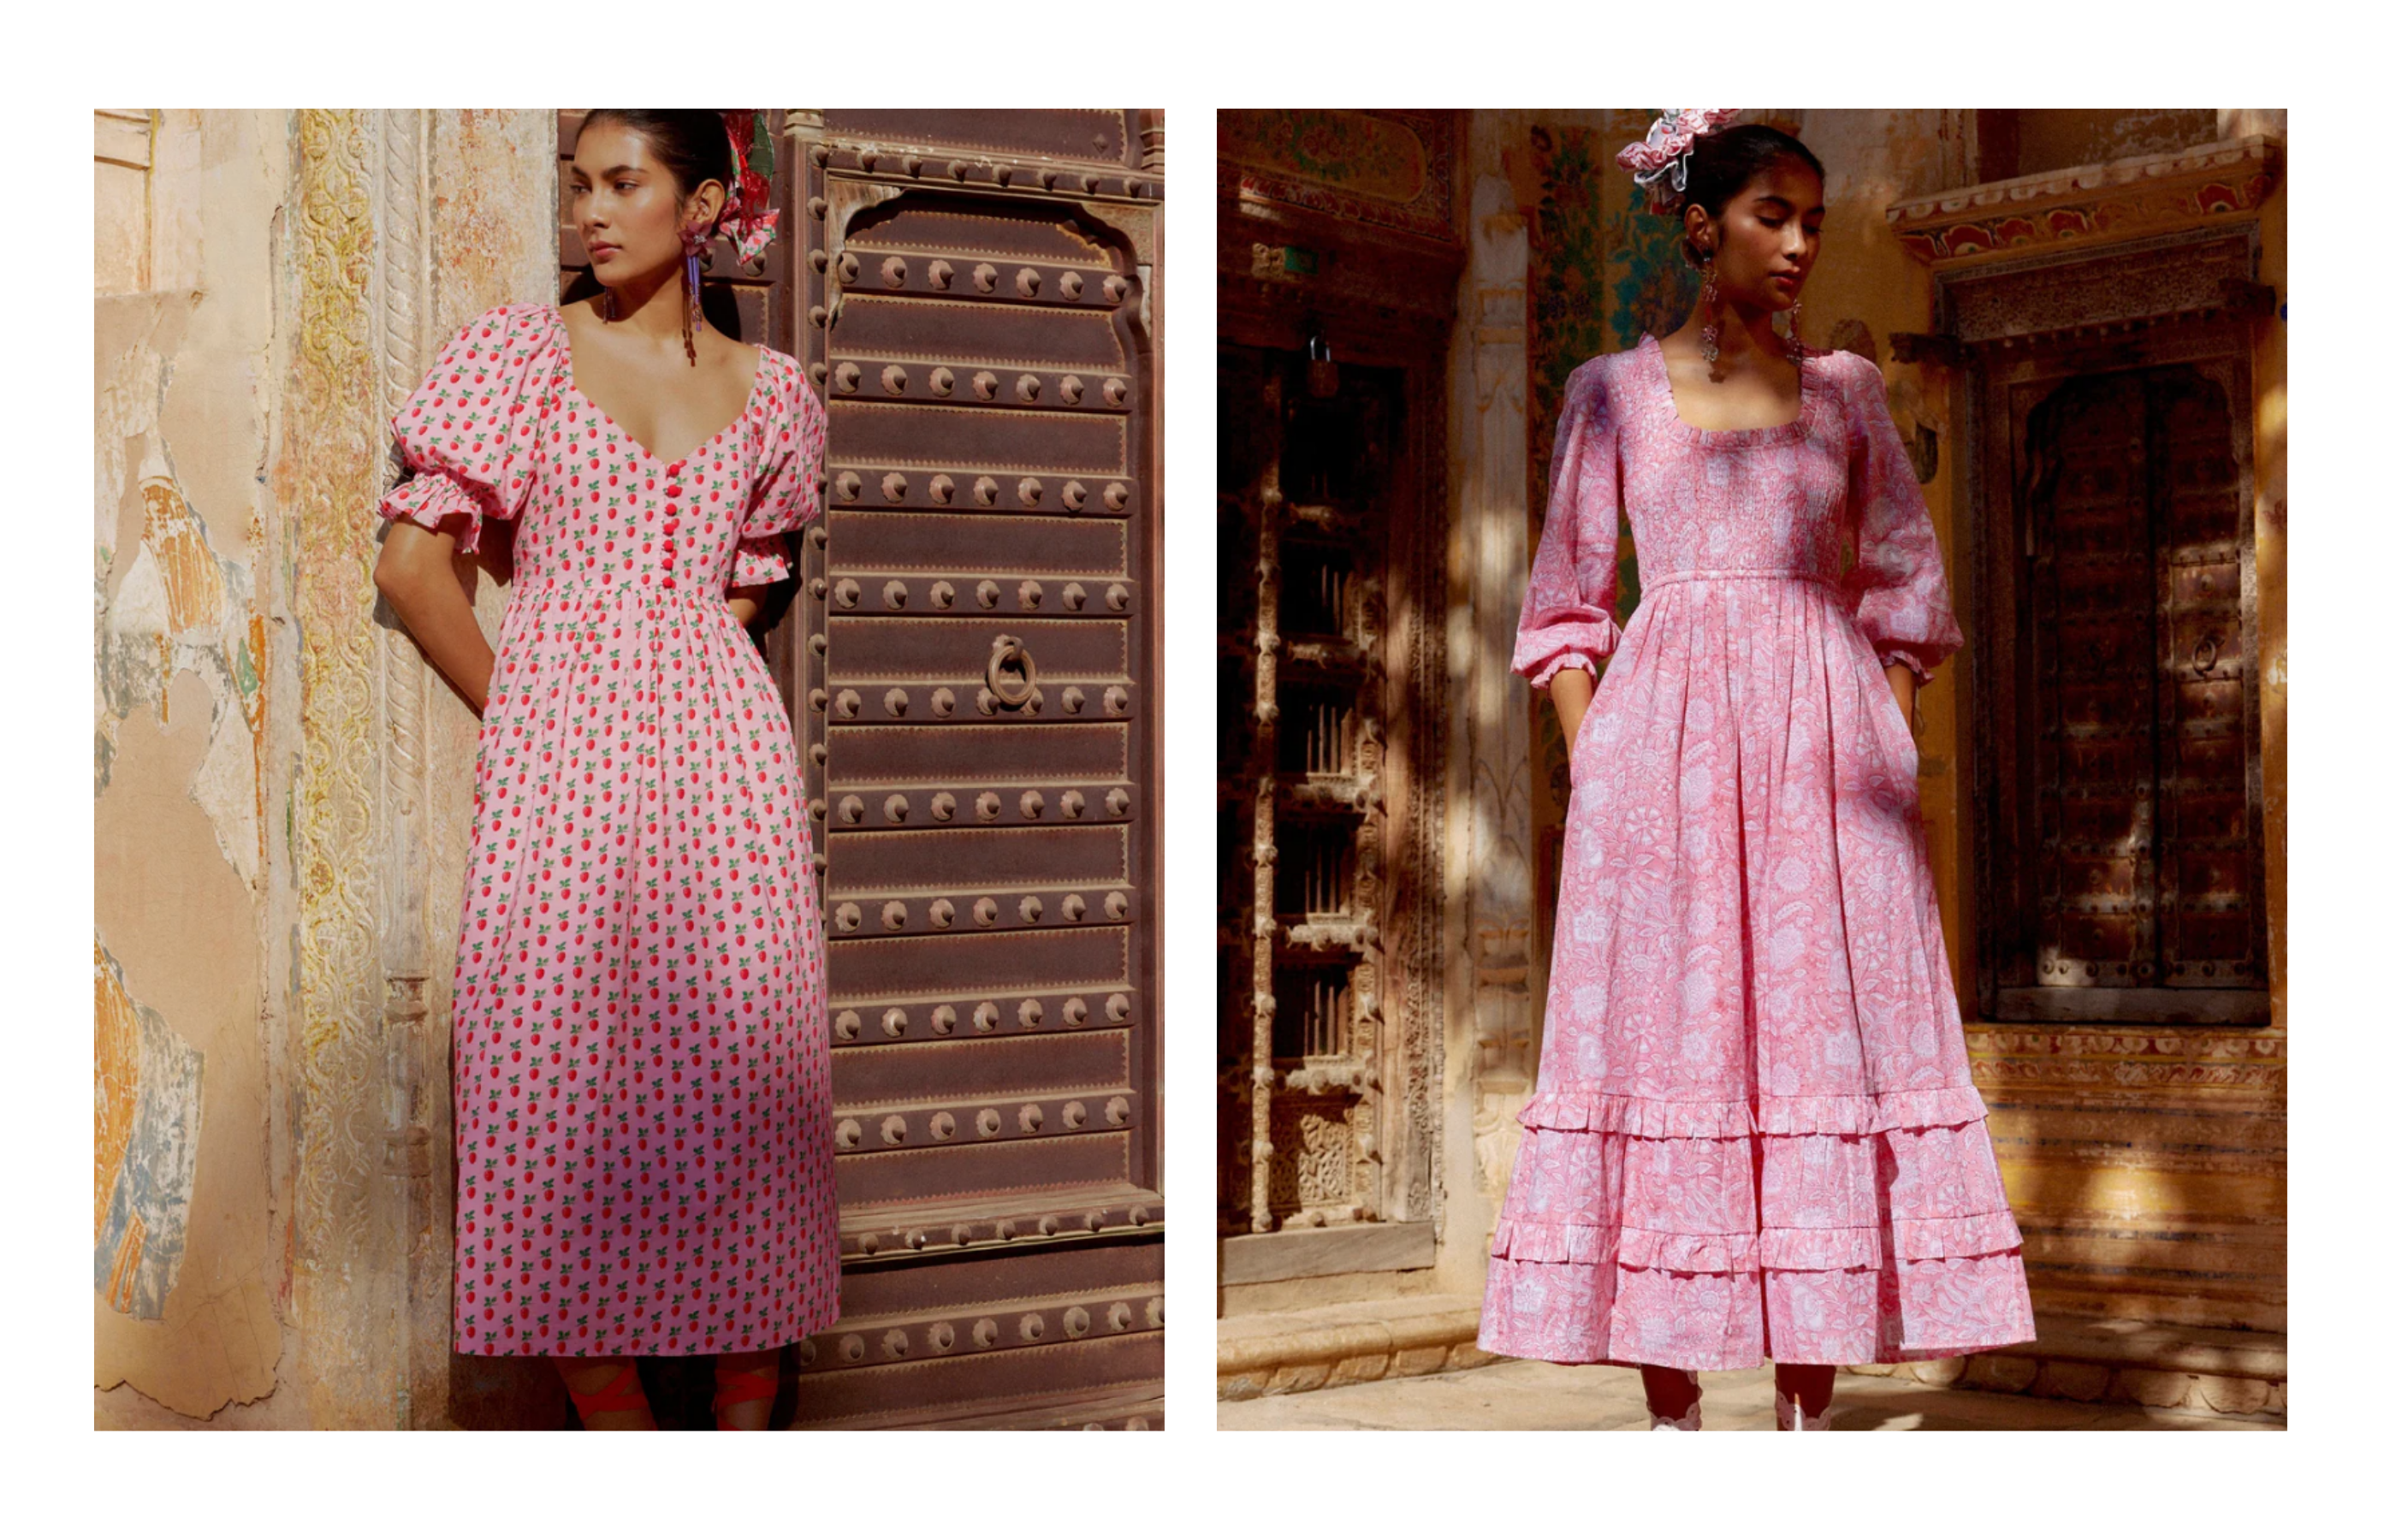 Model in Prink Printed Dress by Pink City Prints